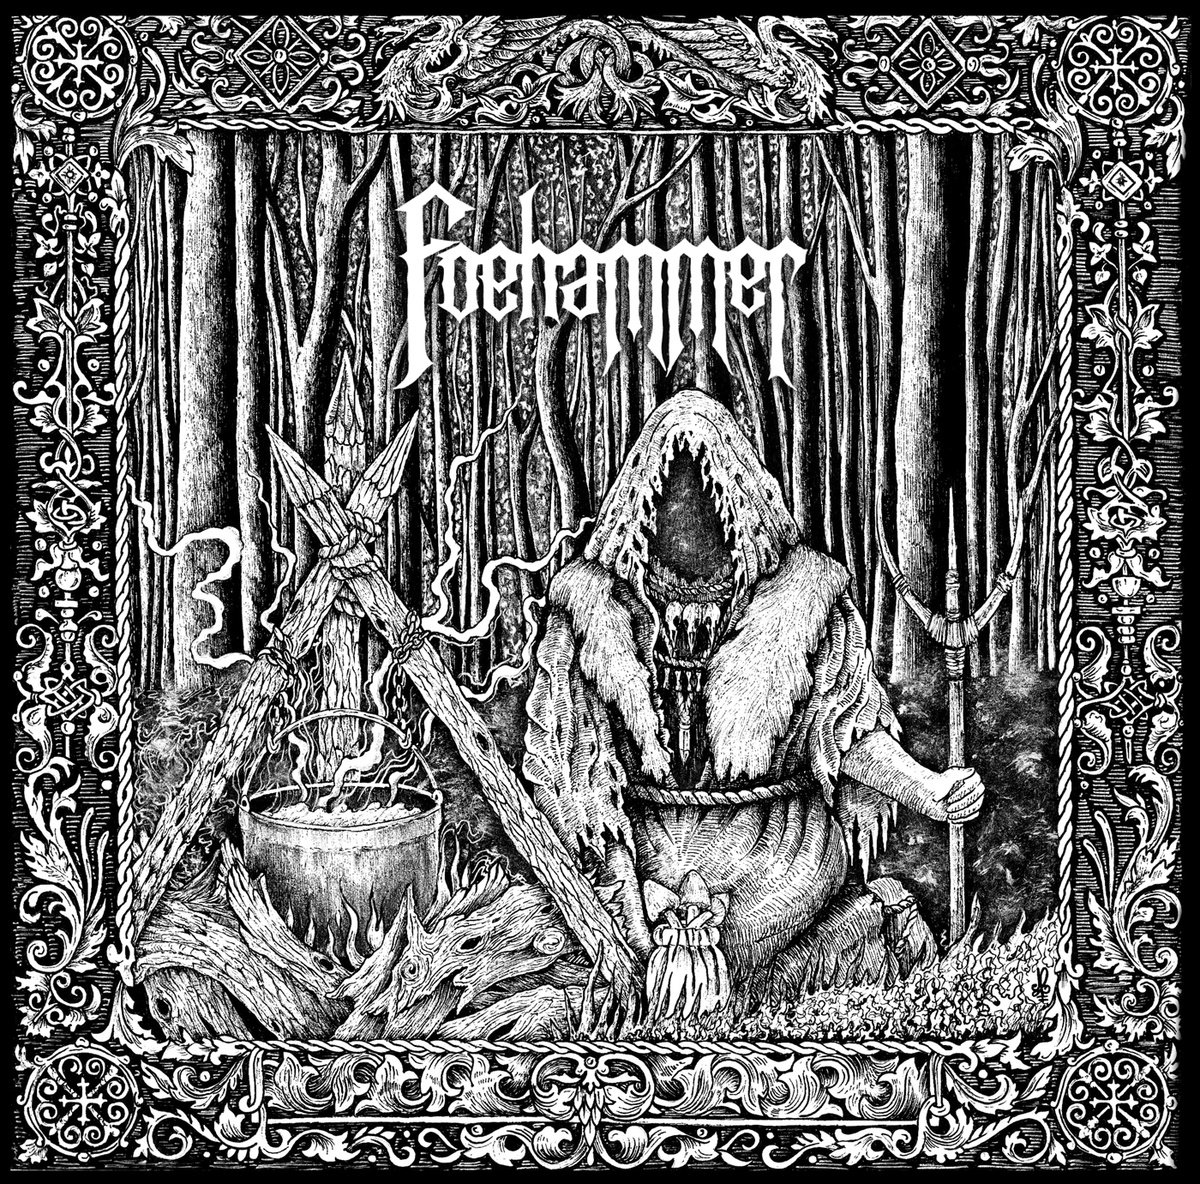 Foehammer - S/T (Black Vinyl)